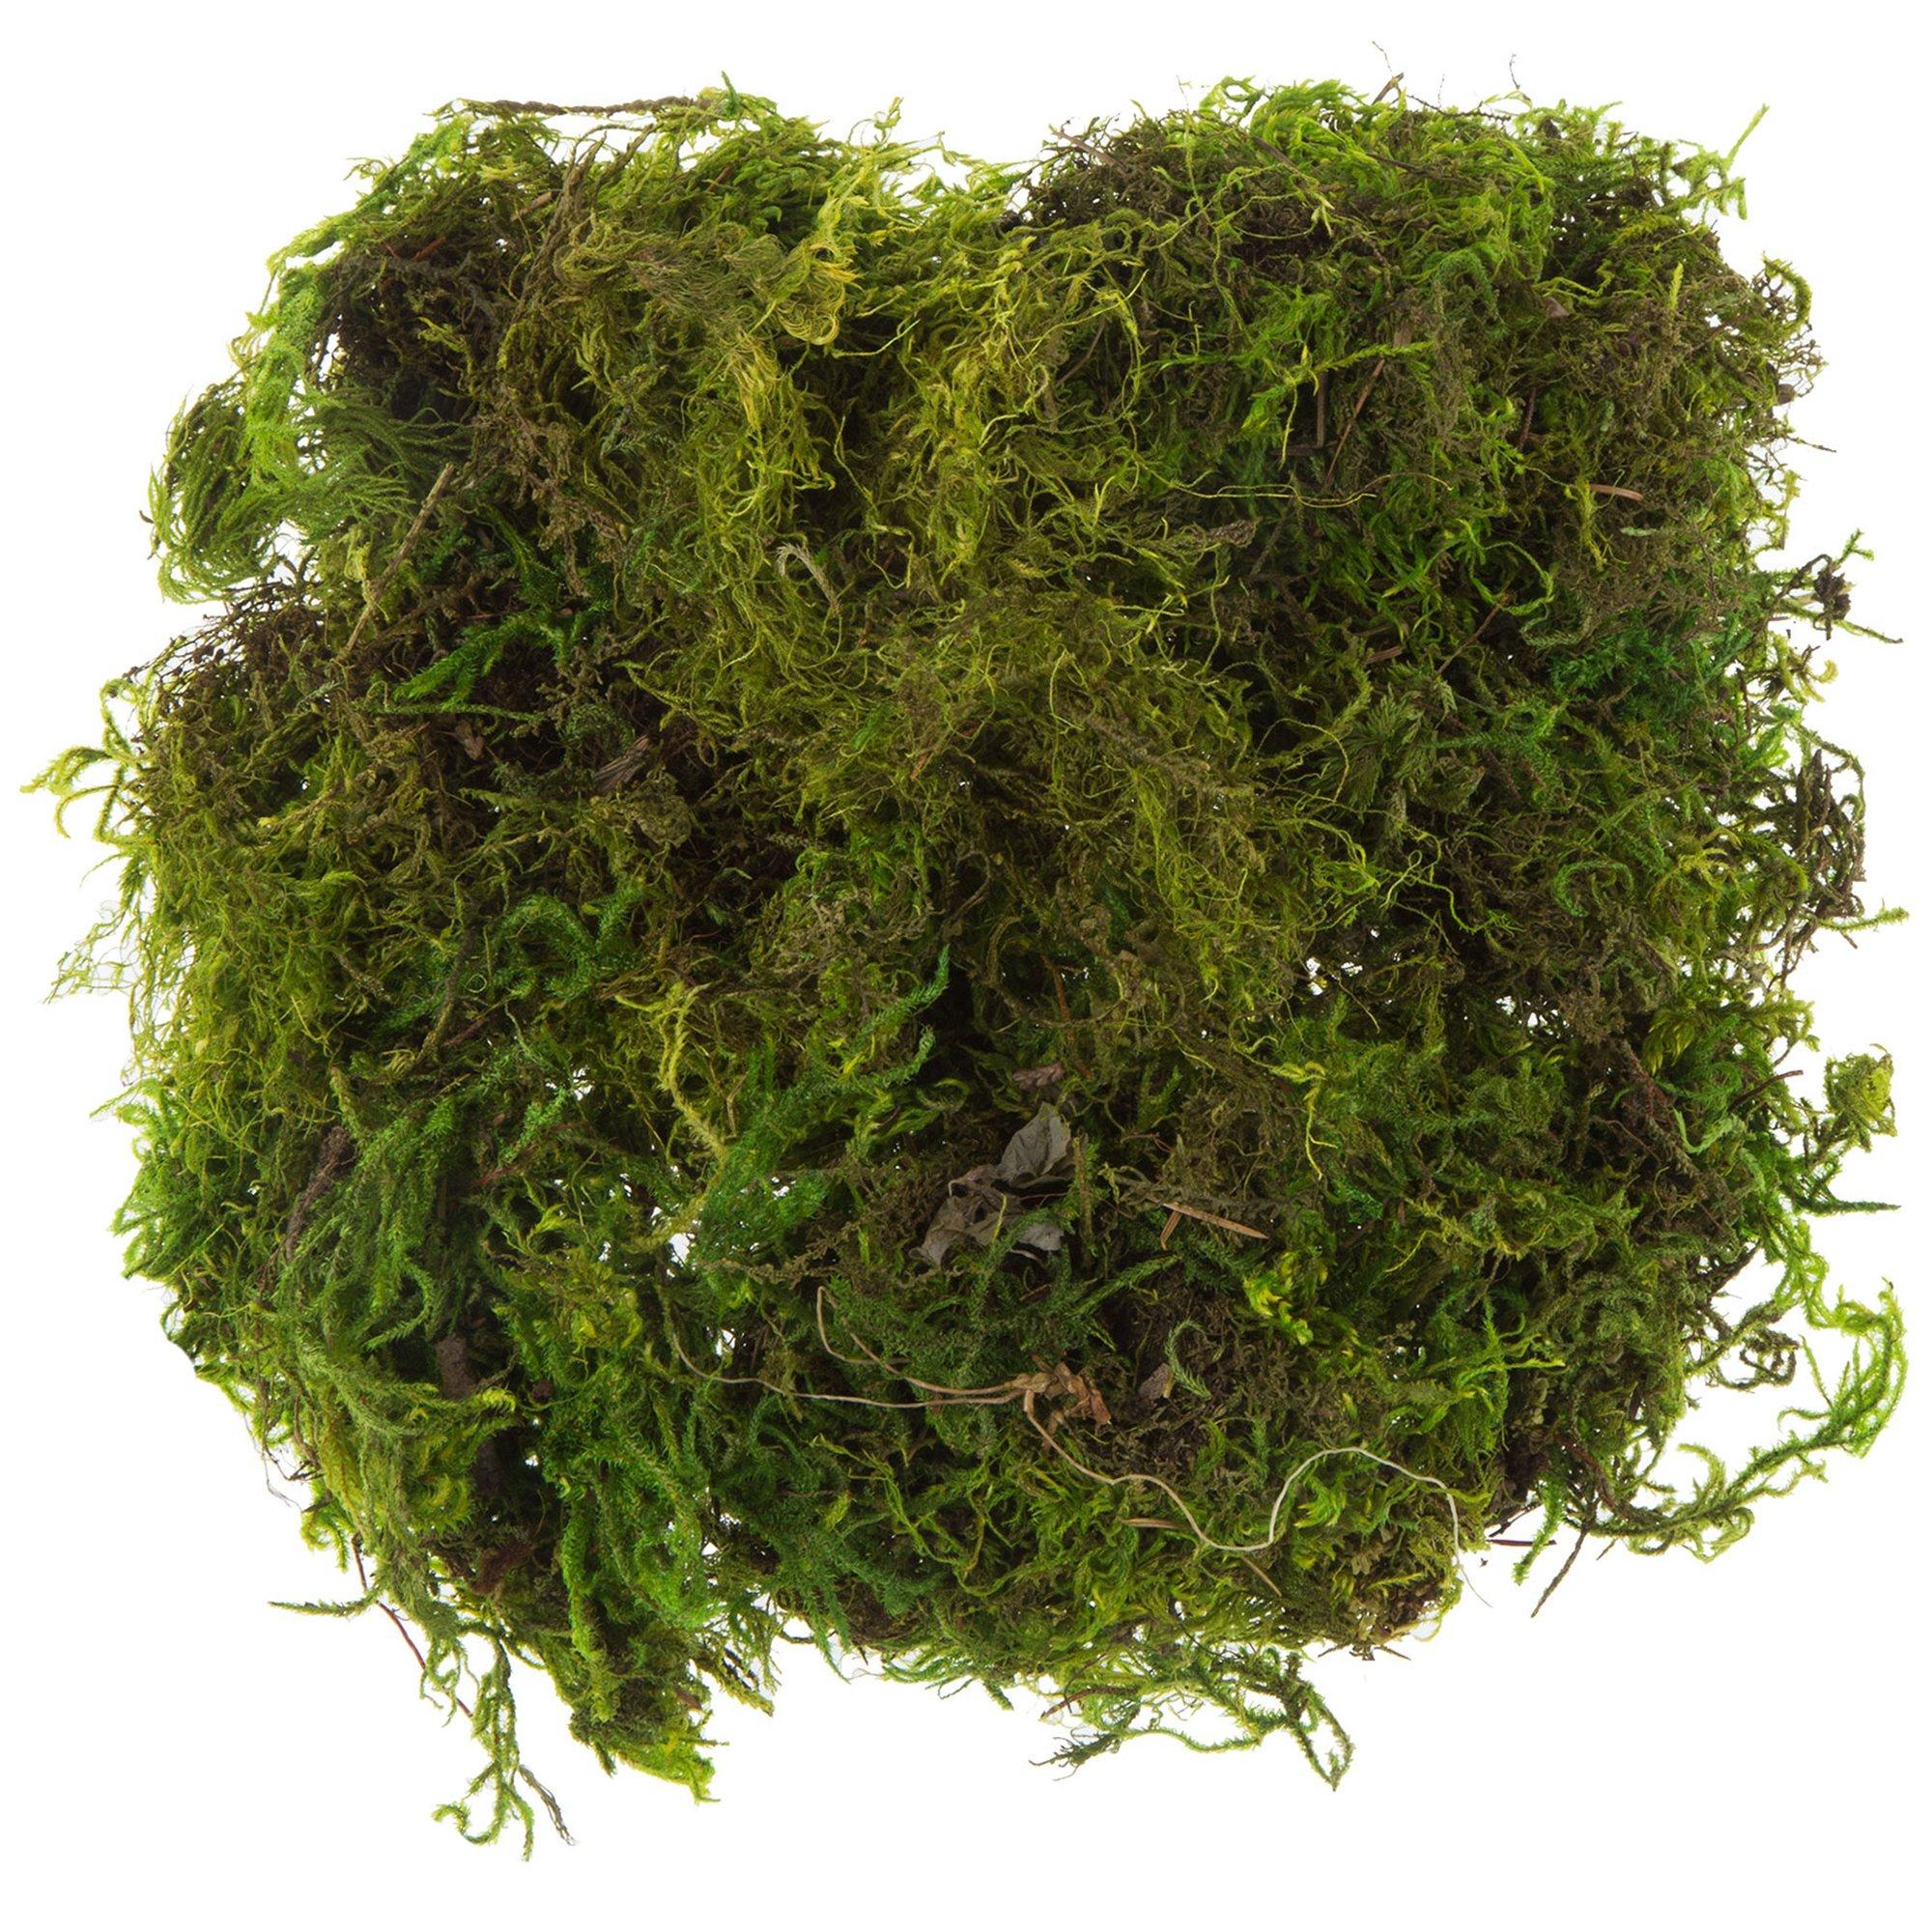 SuperMoss® Spanish Moss – Grass – The Home & Garden Center